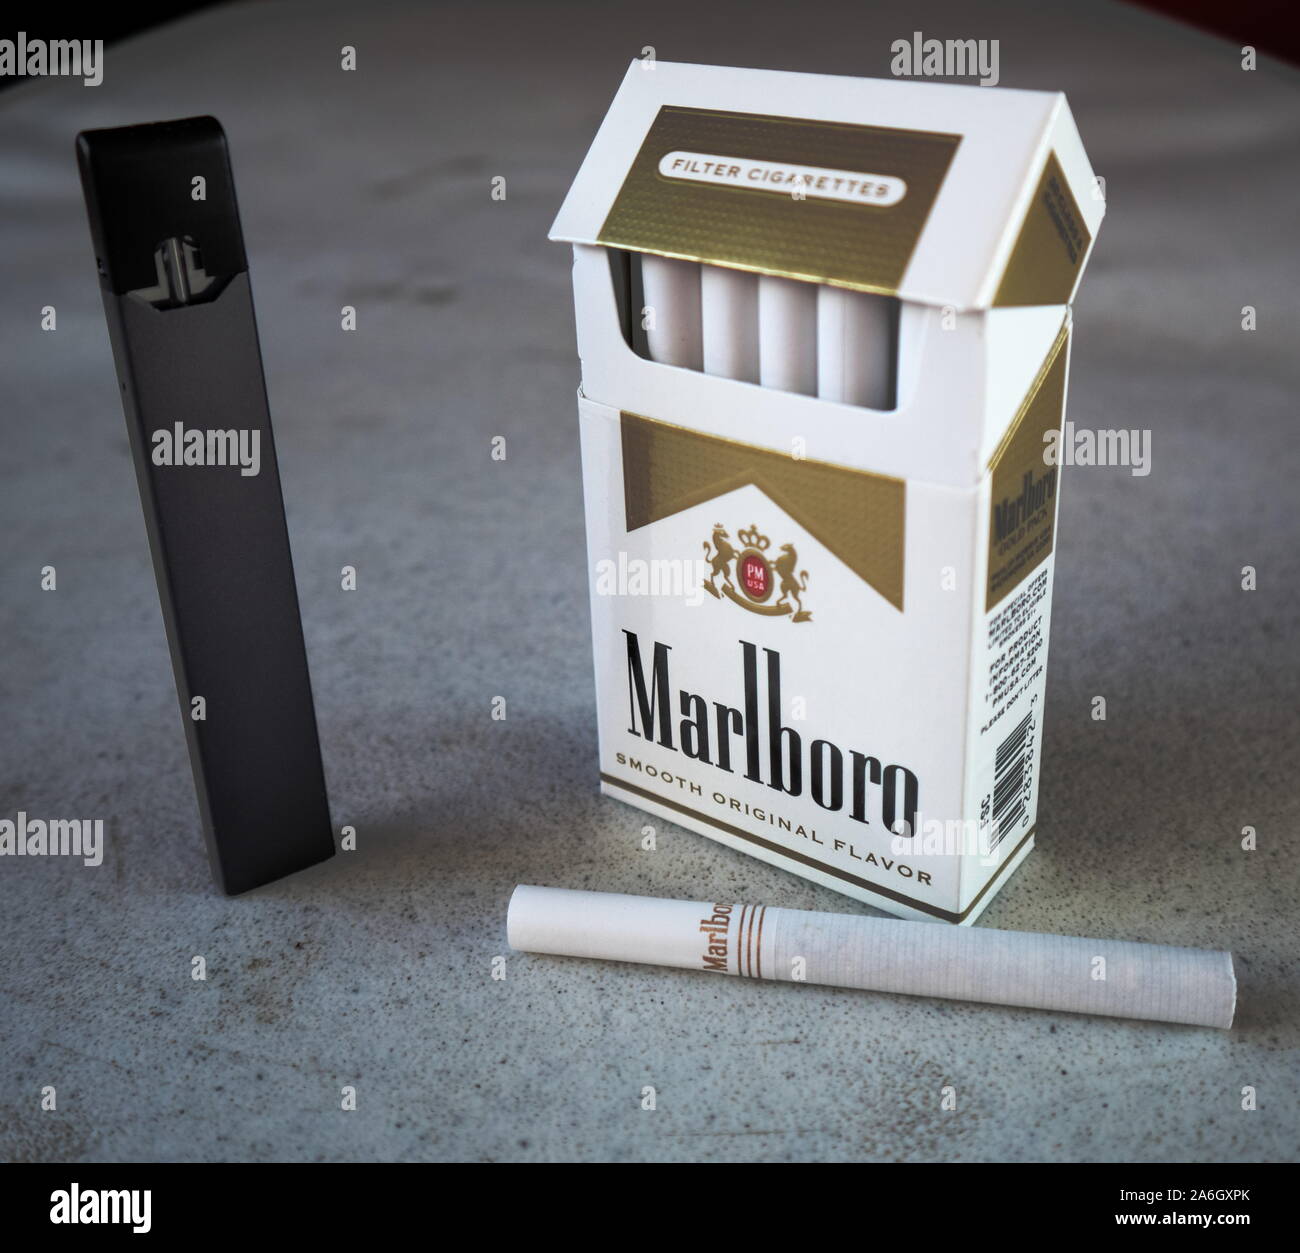 Juul vape pod sigaretta elettronica dispositivo con un pacchetto di sigarette Marlboro e una sigaretta collocato al di fuori su di un bianco tavola testurizzato, isolato Foto Stock